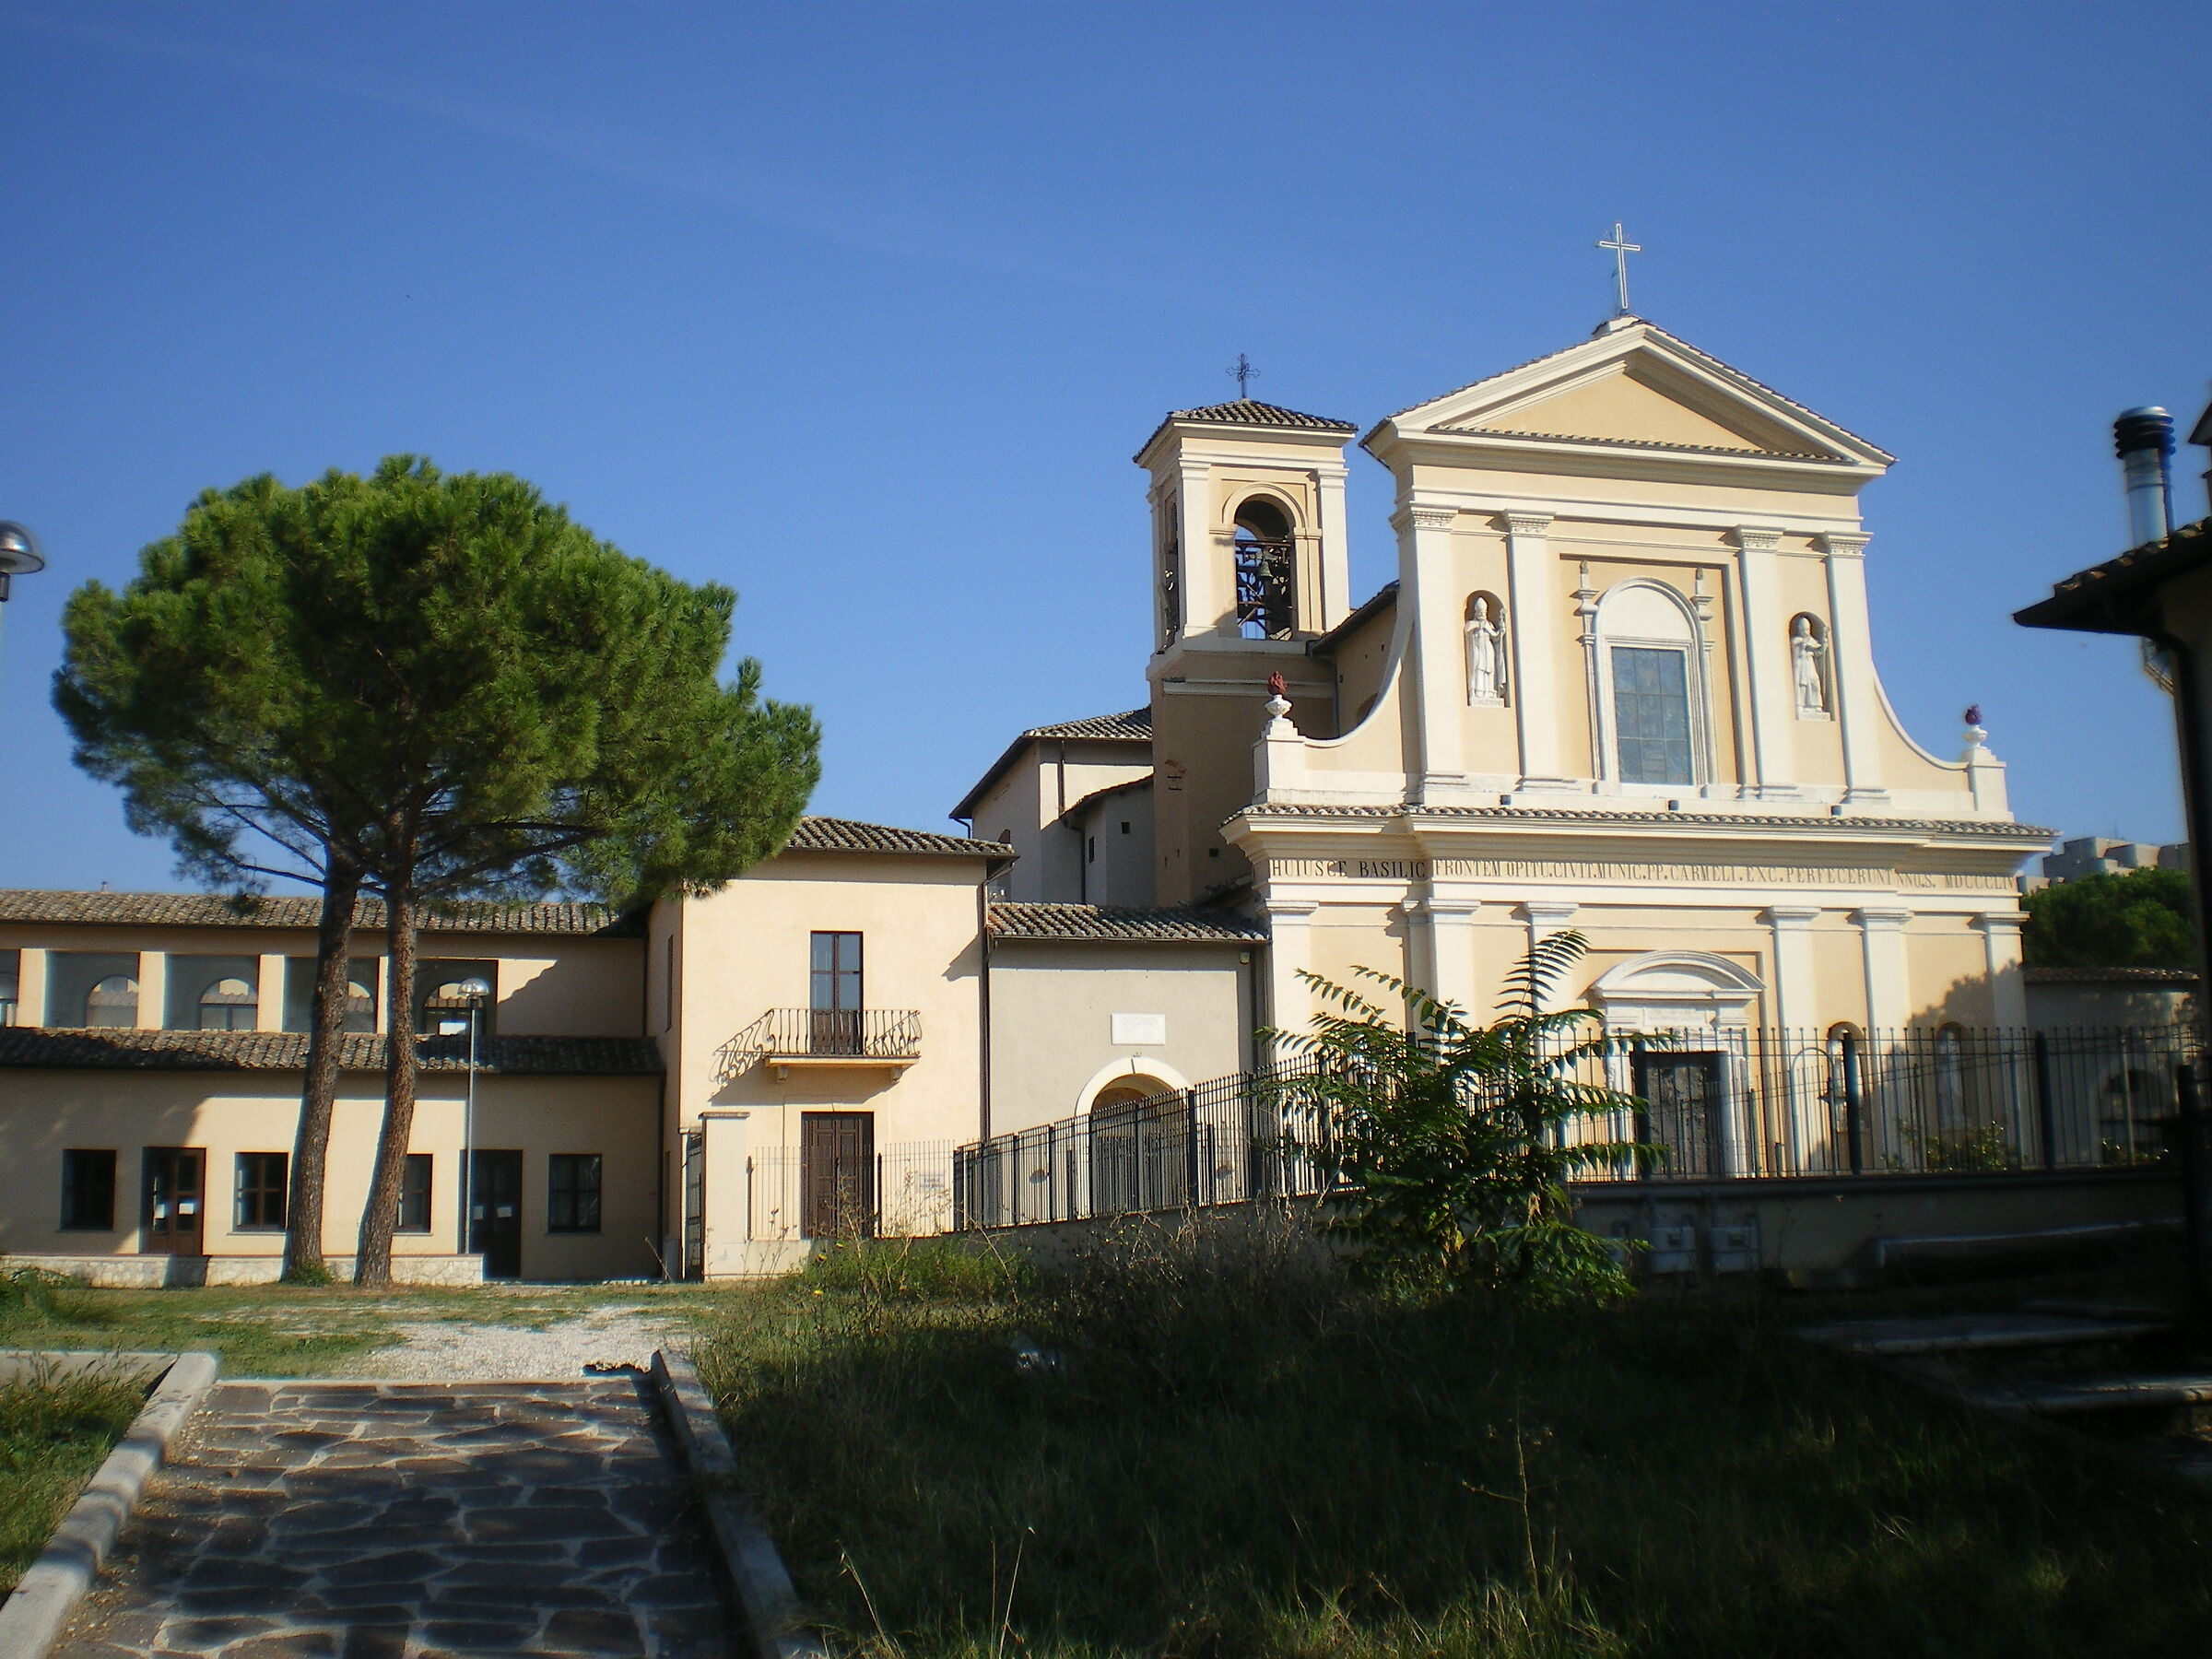 ST. VALENTINE'S CHURCH IN TERNI....